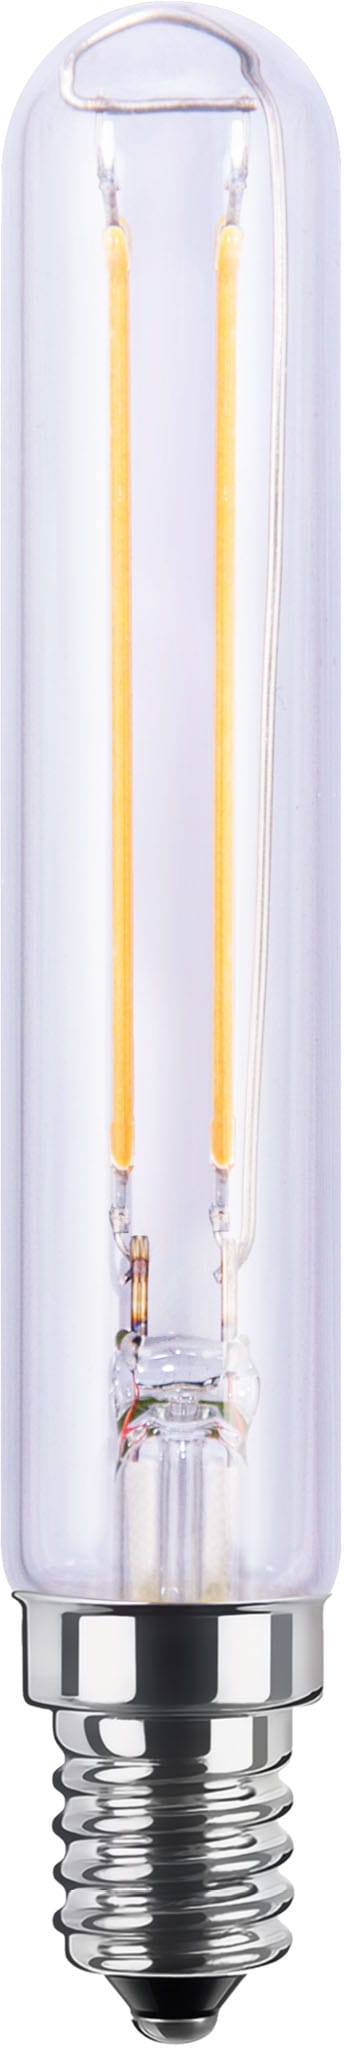 LED-Leuchtmittel »LED Tube klar«, E14, Warmweiß, dimmbar, E27, Tube, klar